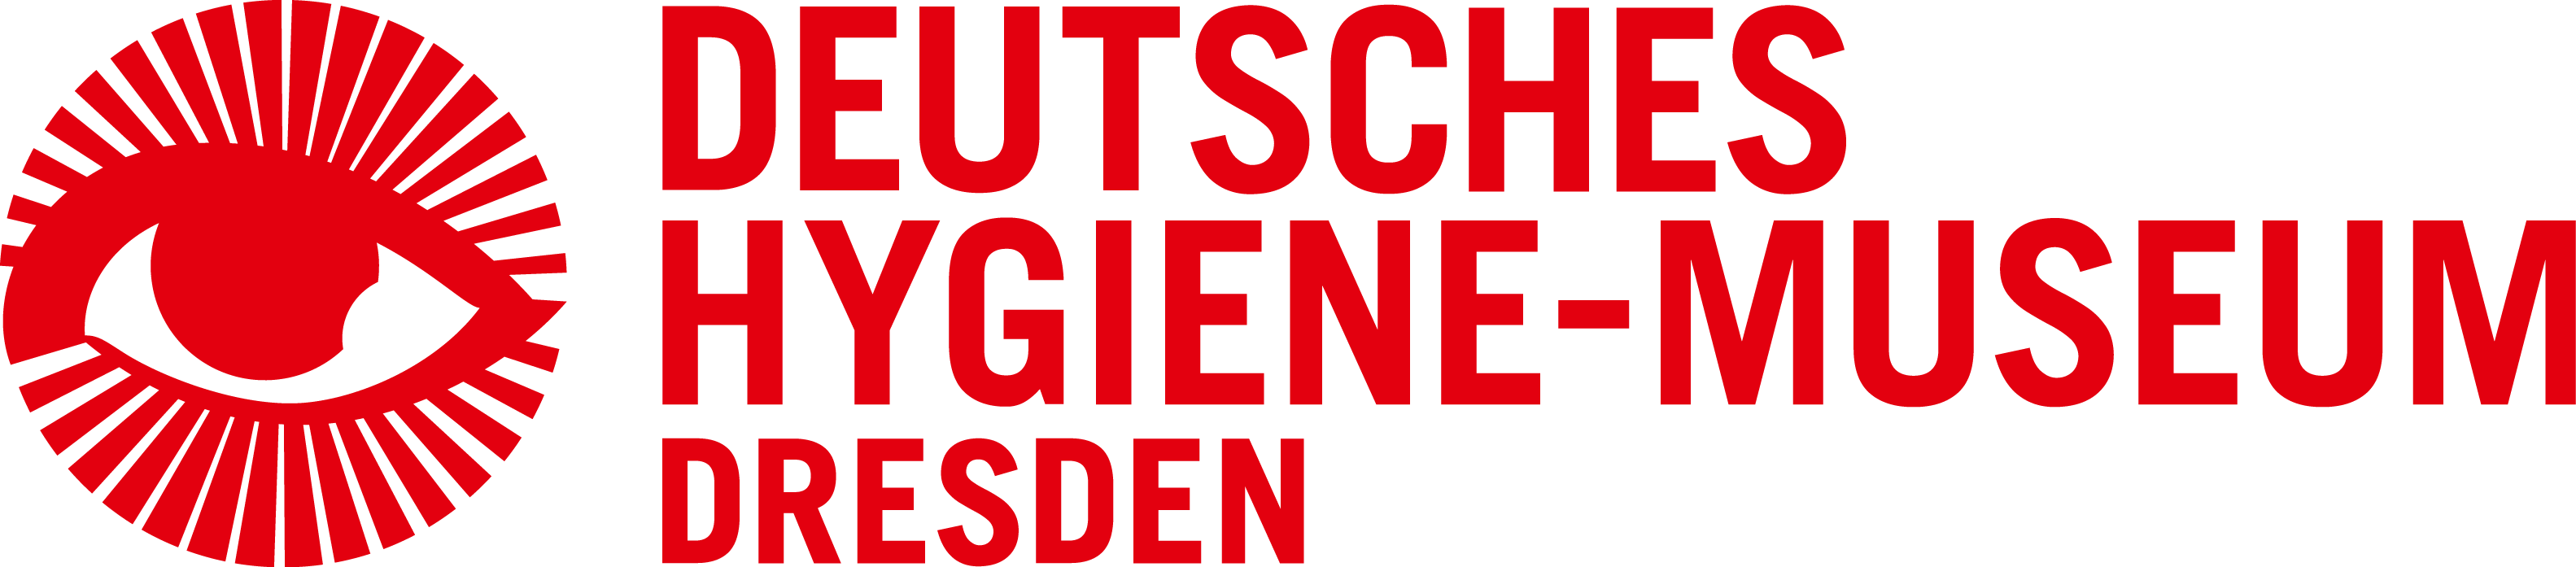 Featured image for “Deutsches Hygiene-Museum Dresden”